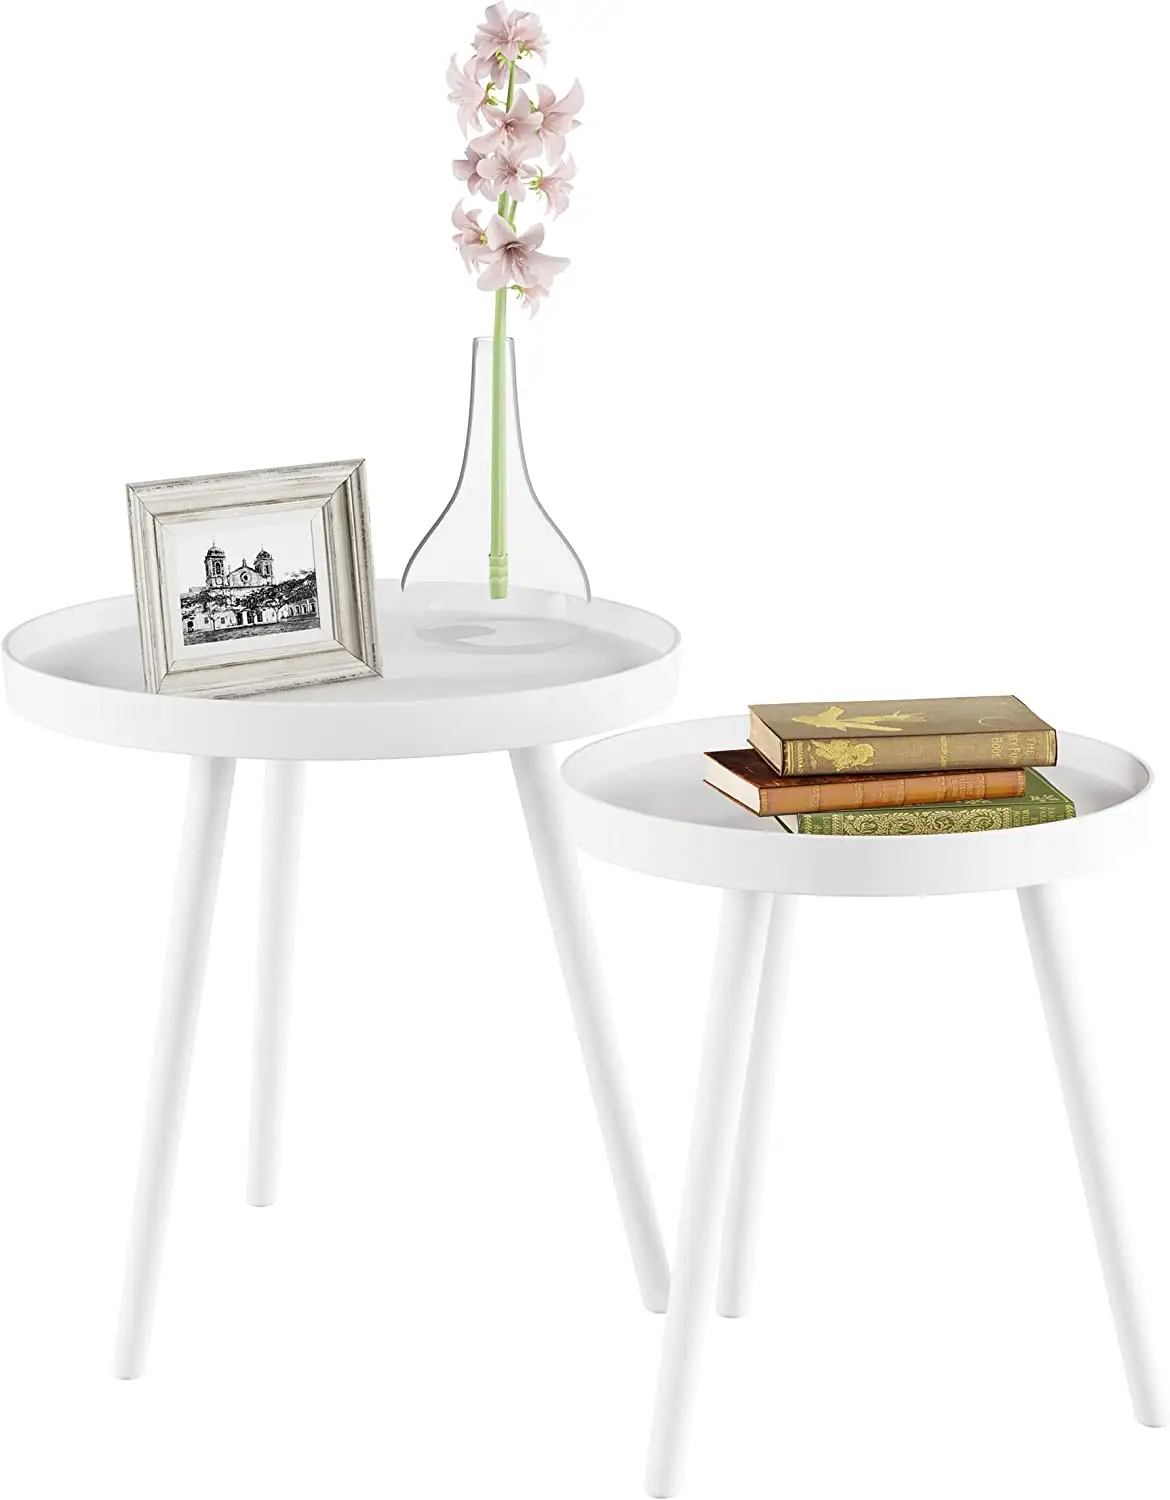 Оптовая продажа с завода, современный деревянный боковой столик для гостиной, круглый столик с подносом, набор из 2 журнальных столиков в скандинавском стиле